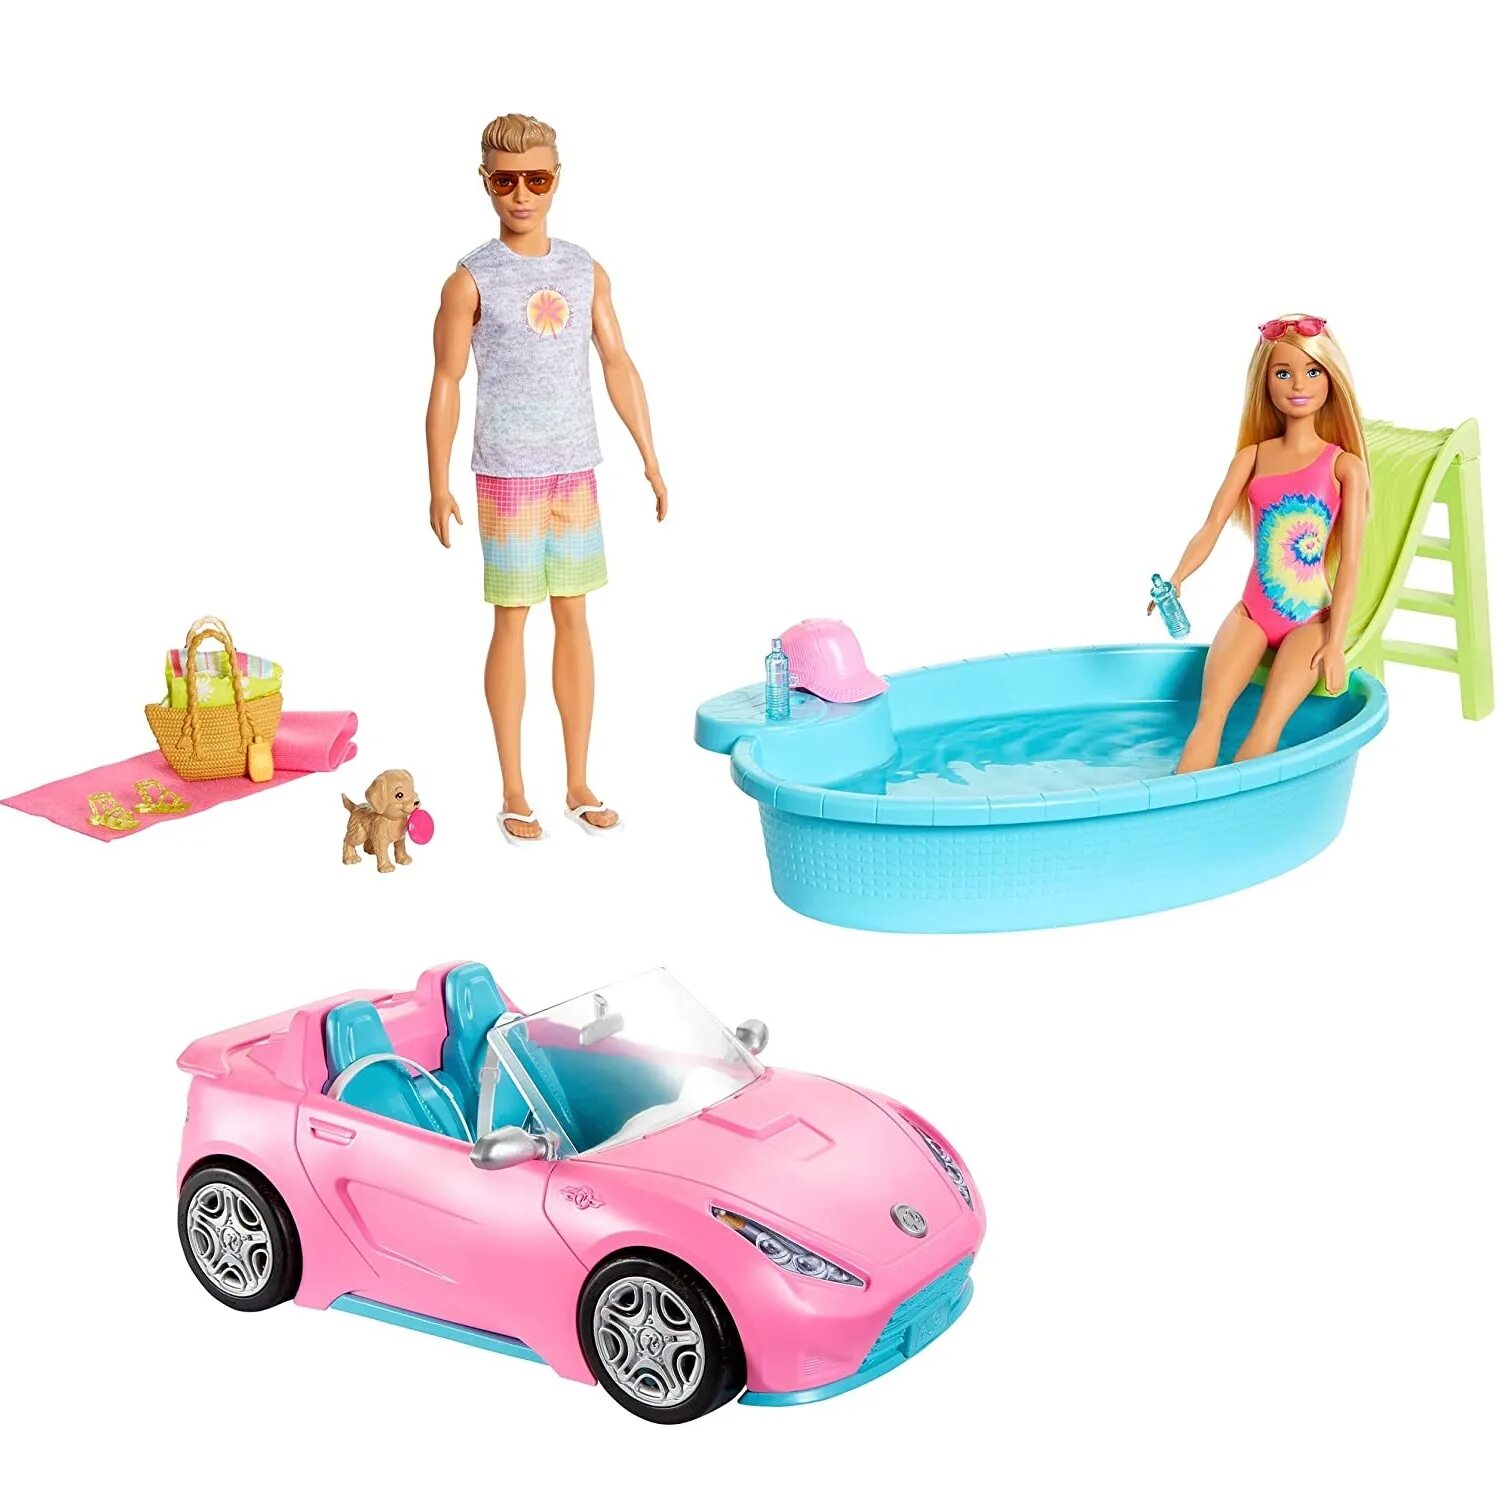 Купить куклы машину. Набор игровой Barbie 2куклы +автомобиль +аксессуары gjb71. Набор Барби Кен машина бассейн. Набор Барби gjb71. Набор Барби и Кен с машиной.